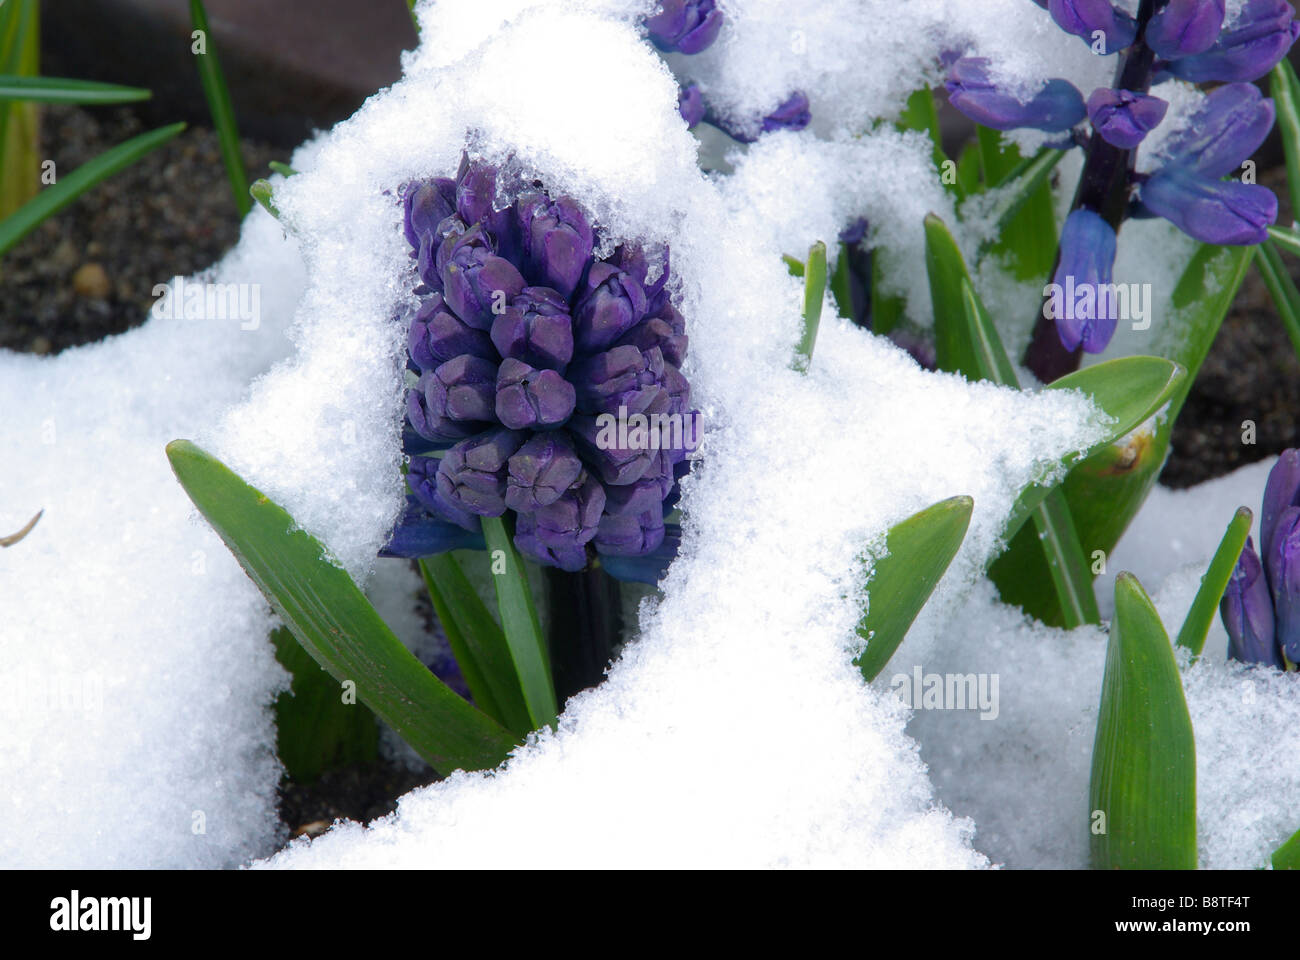 Hyazinthe im Schnee giacinto in snow 01 Foto Stock